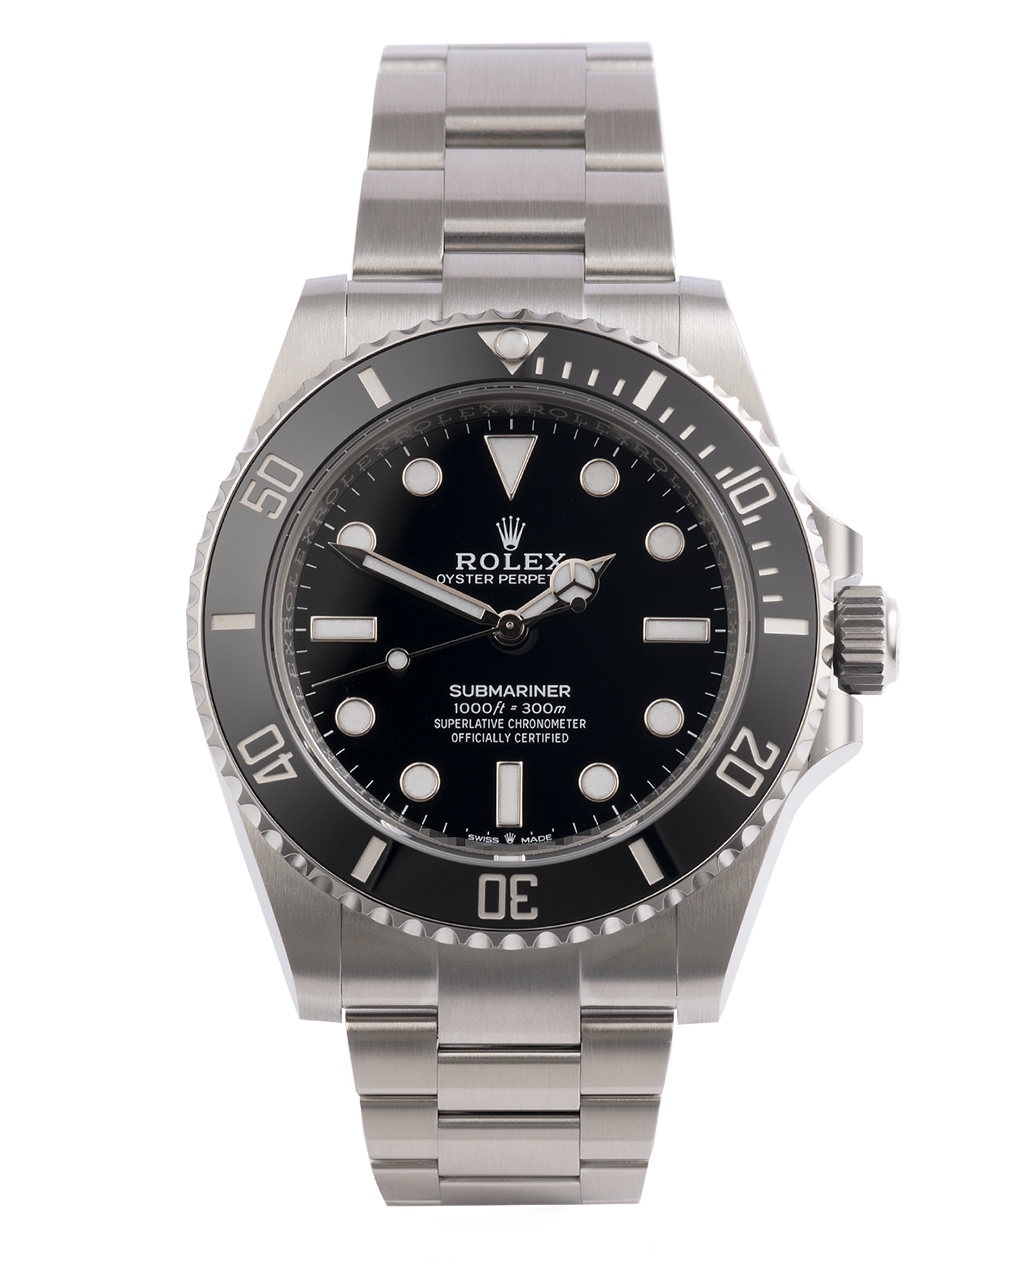 Rolex Submariner Watches | ref 124060 | 124060 - Box & Certificate ...